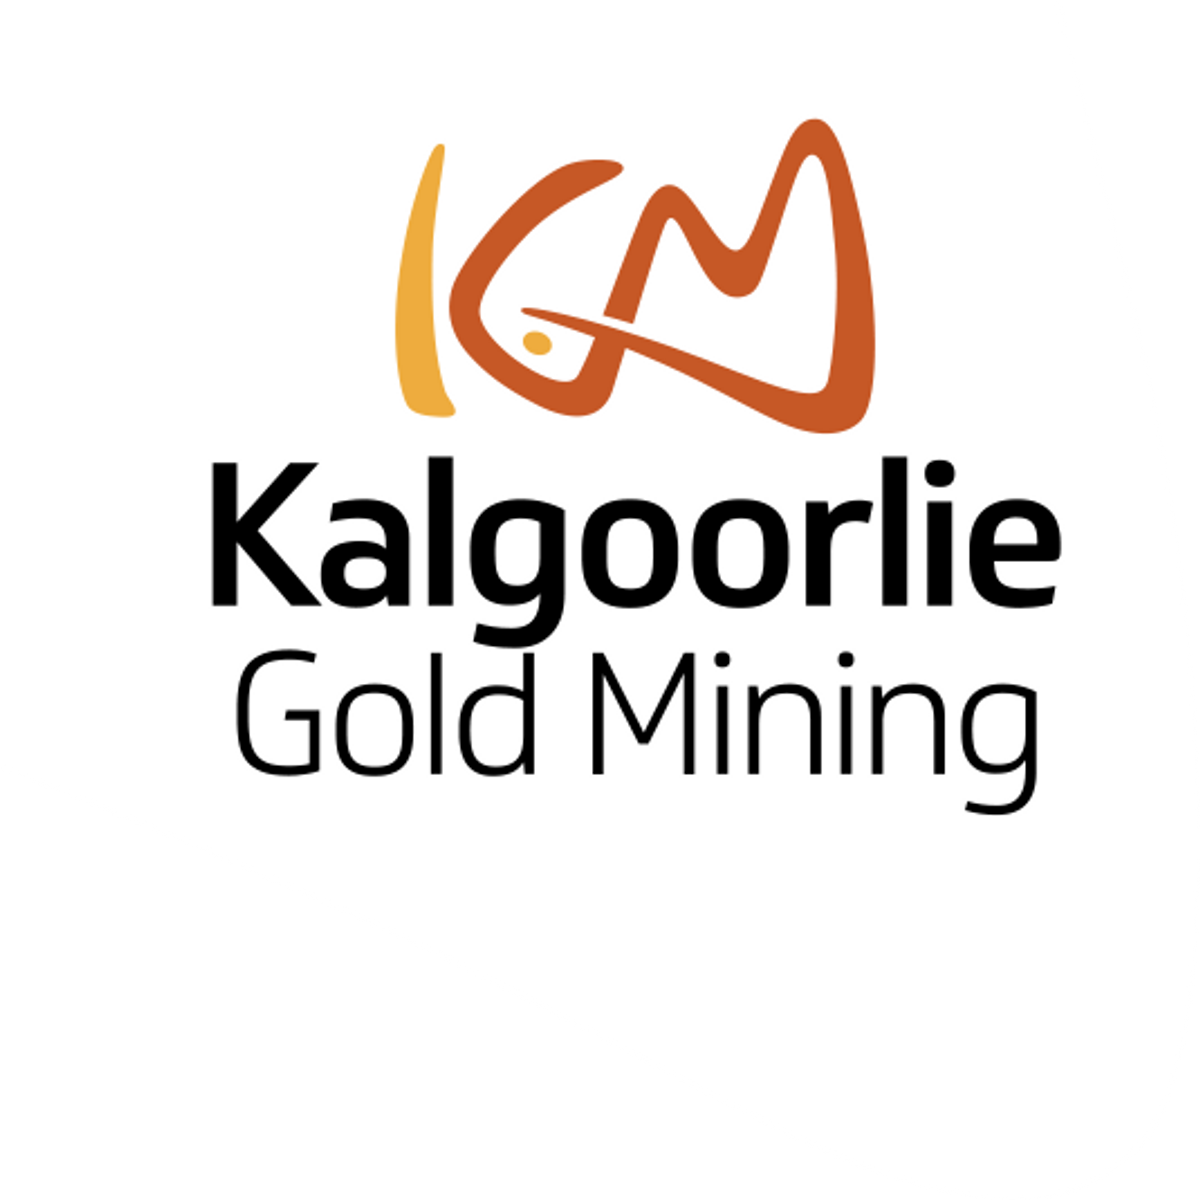 Kalgoorlie Gold Mining Limited